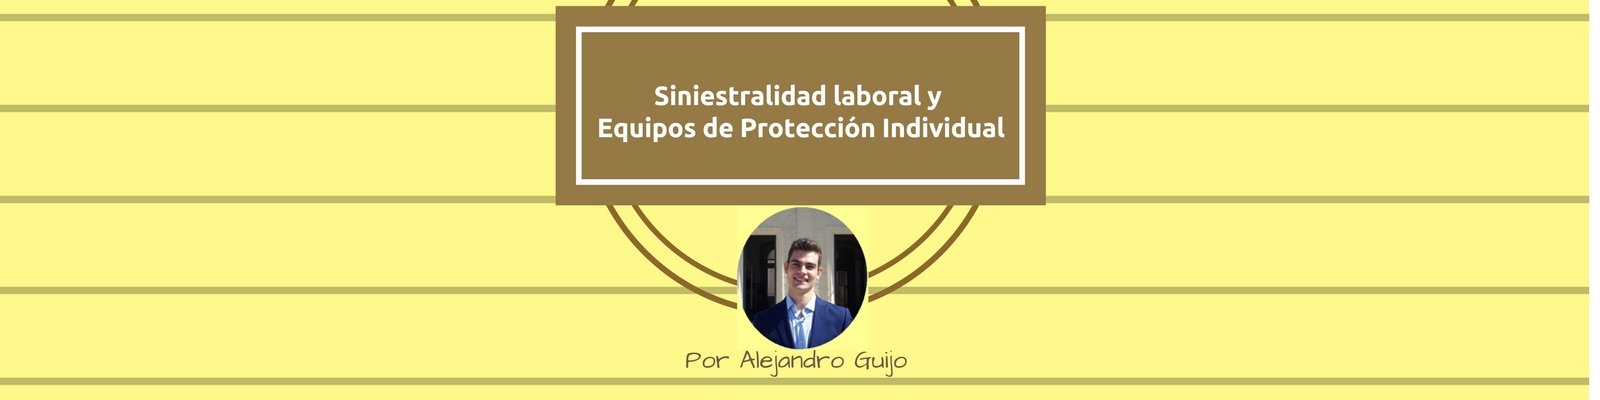 Siniestralidad laboral y Equipos de Protección Individual. Por Alejandro Guijo Tenreiro